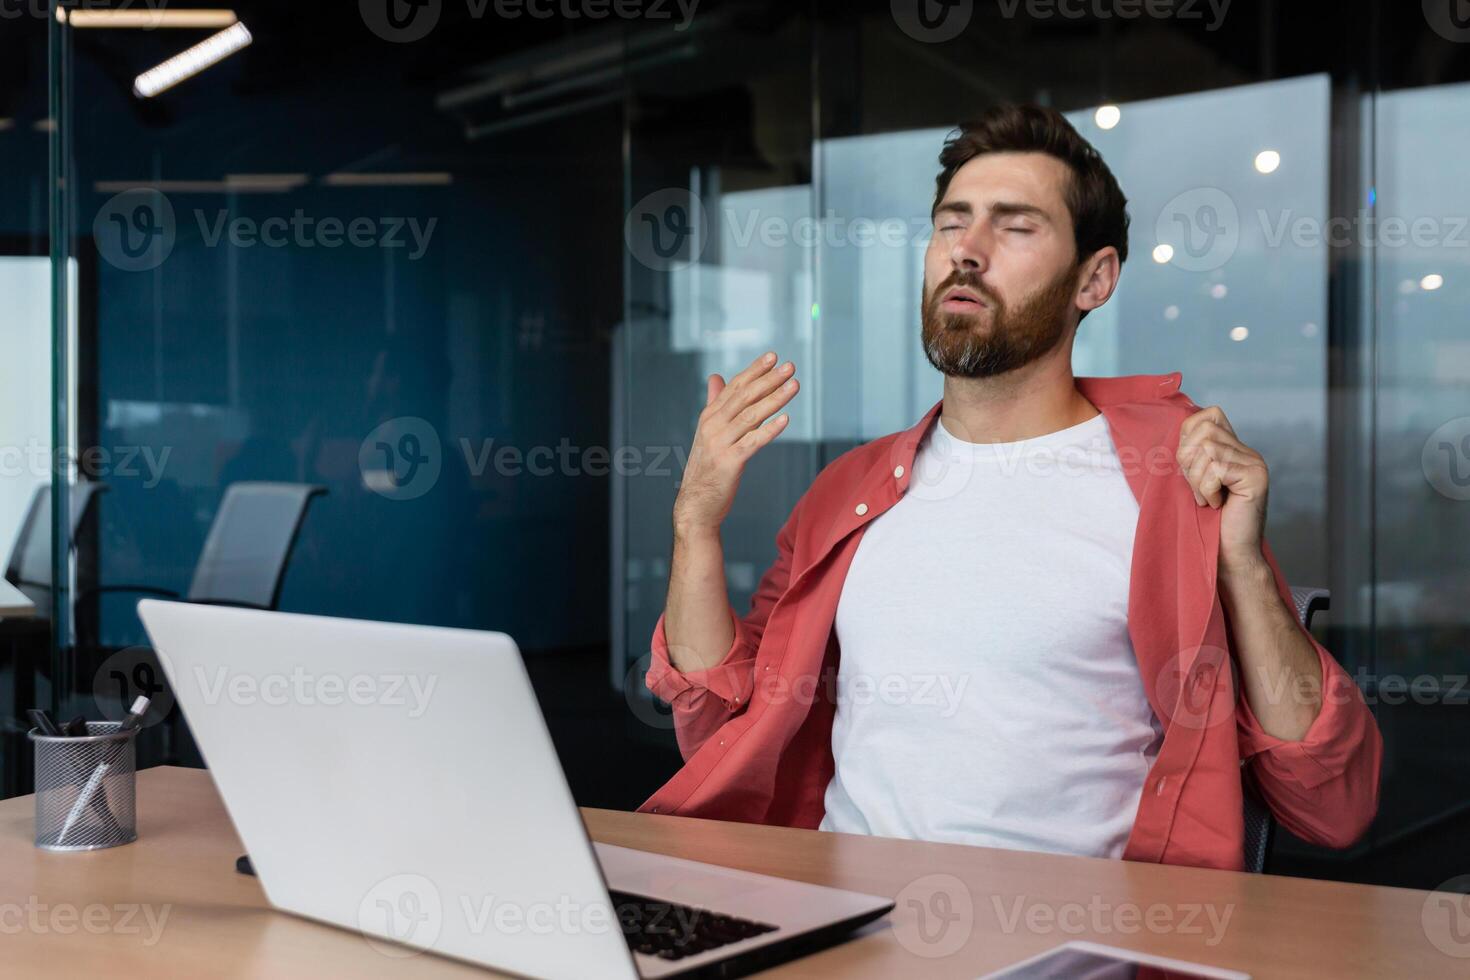 zijn heet in de kantoor, een zakenman in een rood overhemd is heet, de lucht conditioner is niet werken, proberen naar koel omlaag, een Mens binnen de kantoor is werken met een laptop. foto